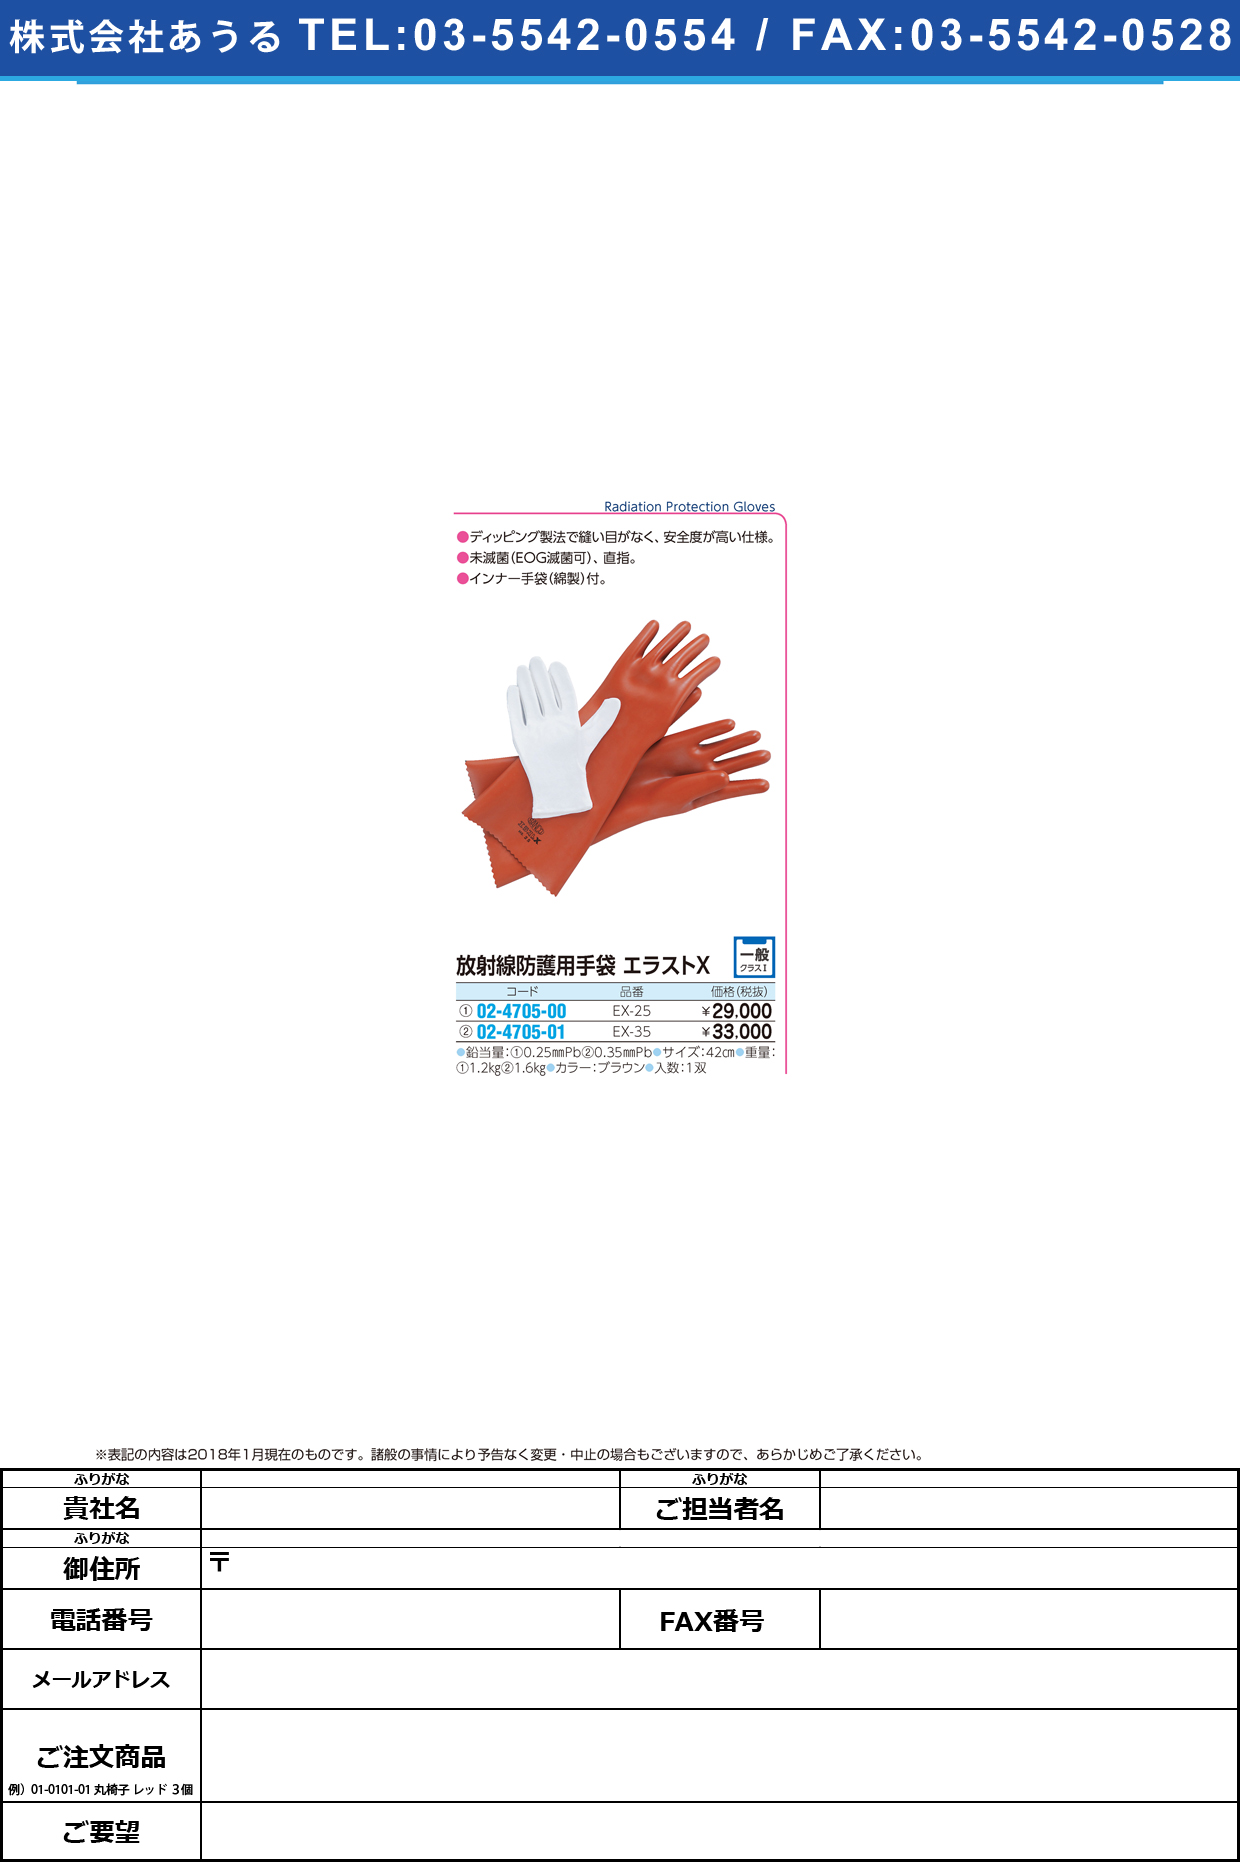 (02-4705-00)エラストＸ手袋 EX-25 ｴﾗｽﾄXﾃﾌﾞｸﾛ(マエダ)【1双単位】【2018年カタログ商品】